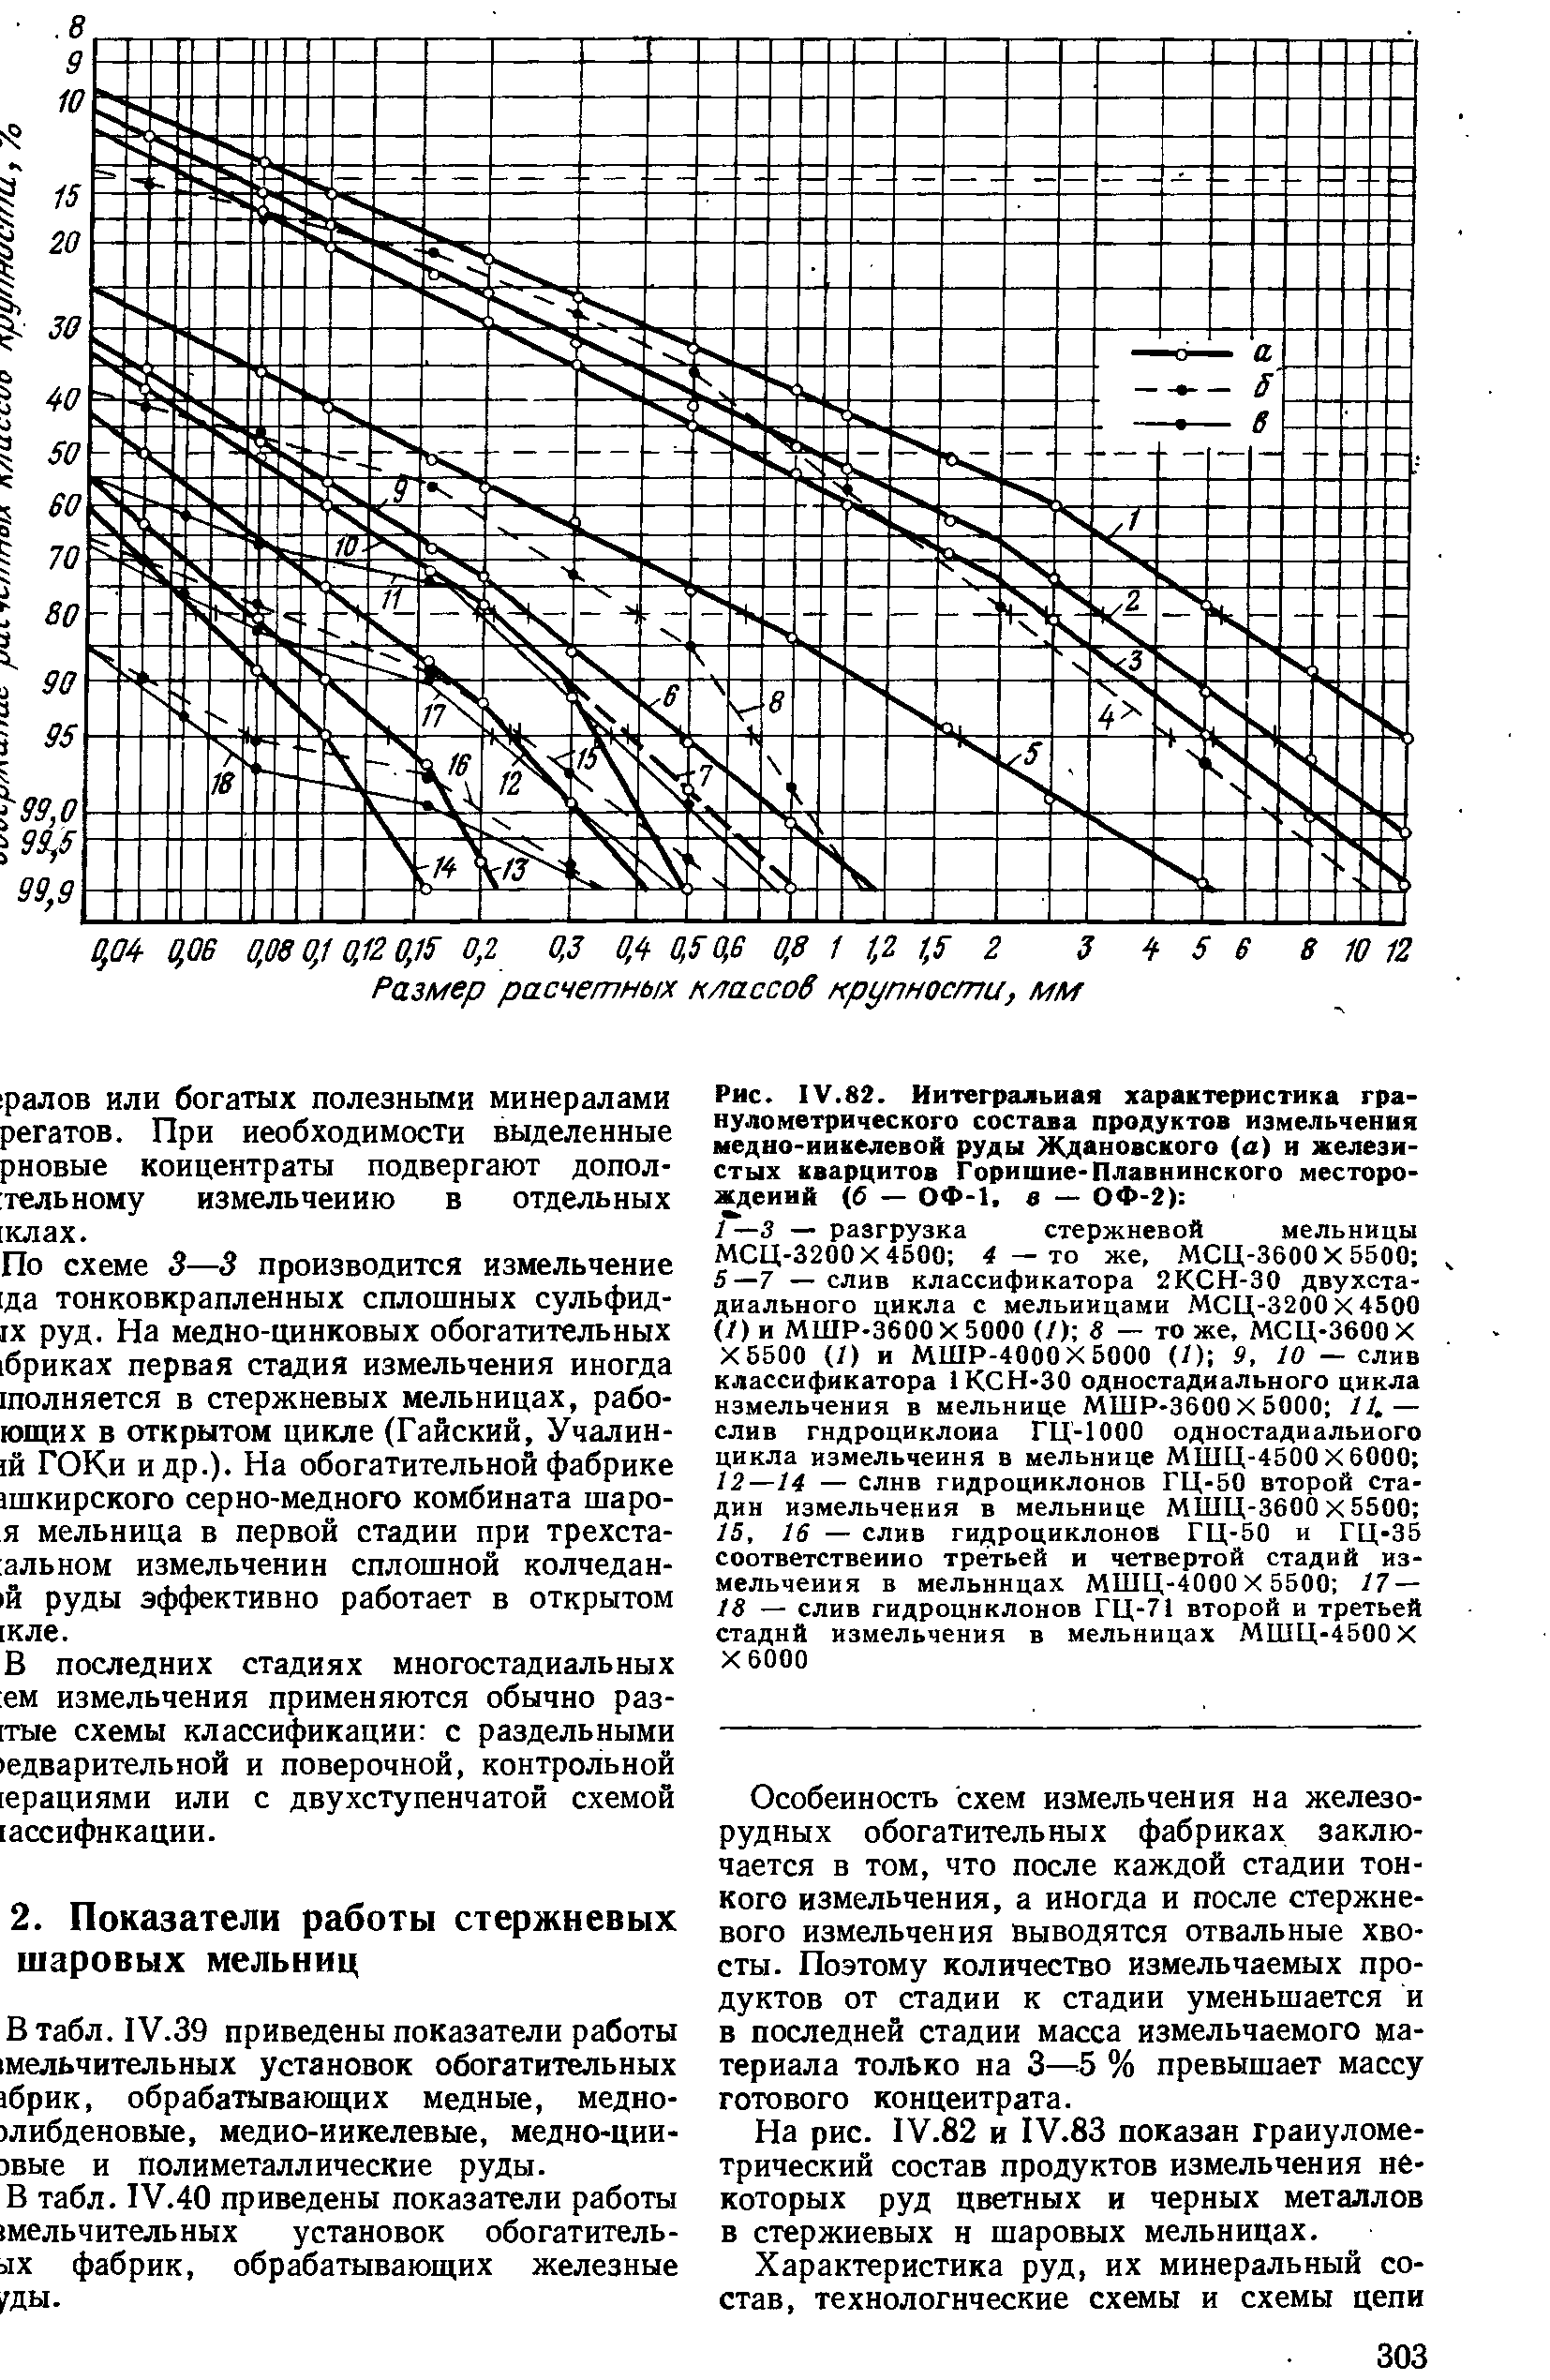 На рис. 1У.82 и 1У.83 показан гранулометрический состав продуктов измельчения некоторых руд цветных и черных металлов в стержневых н шаровых мельницах.